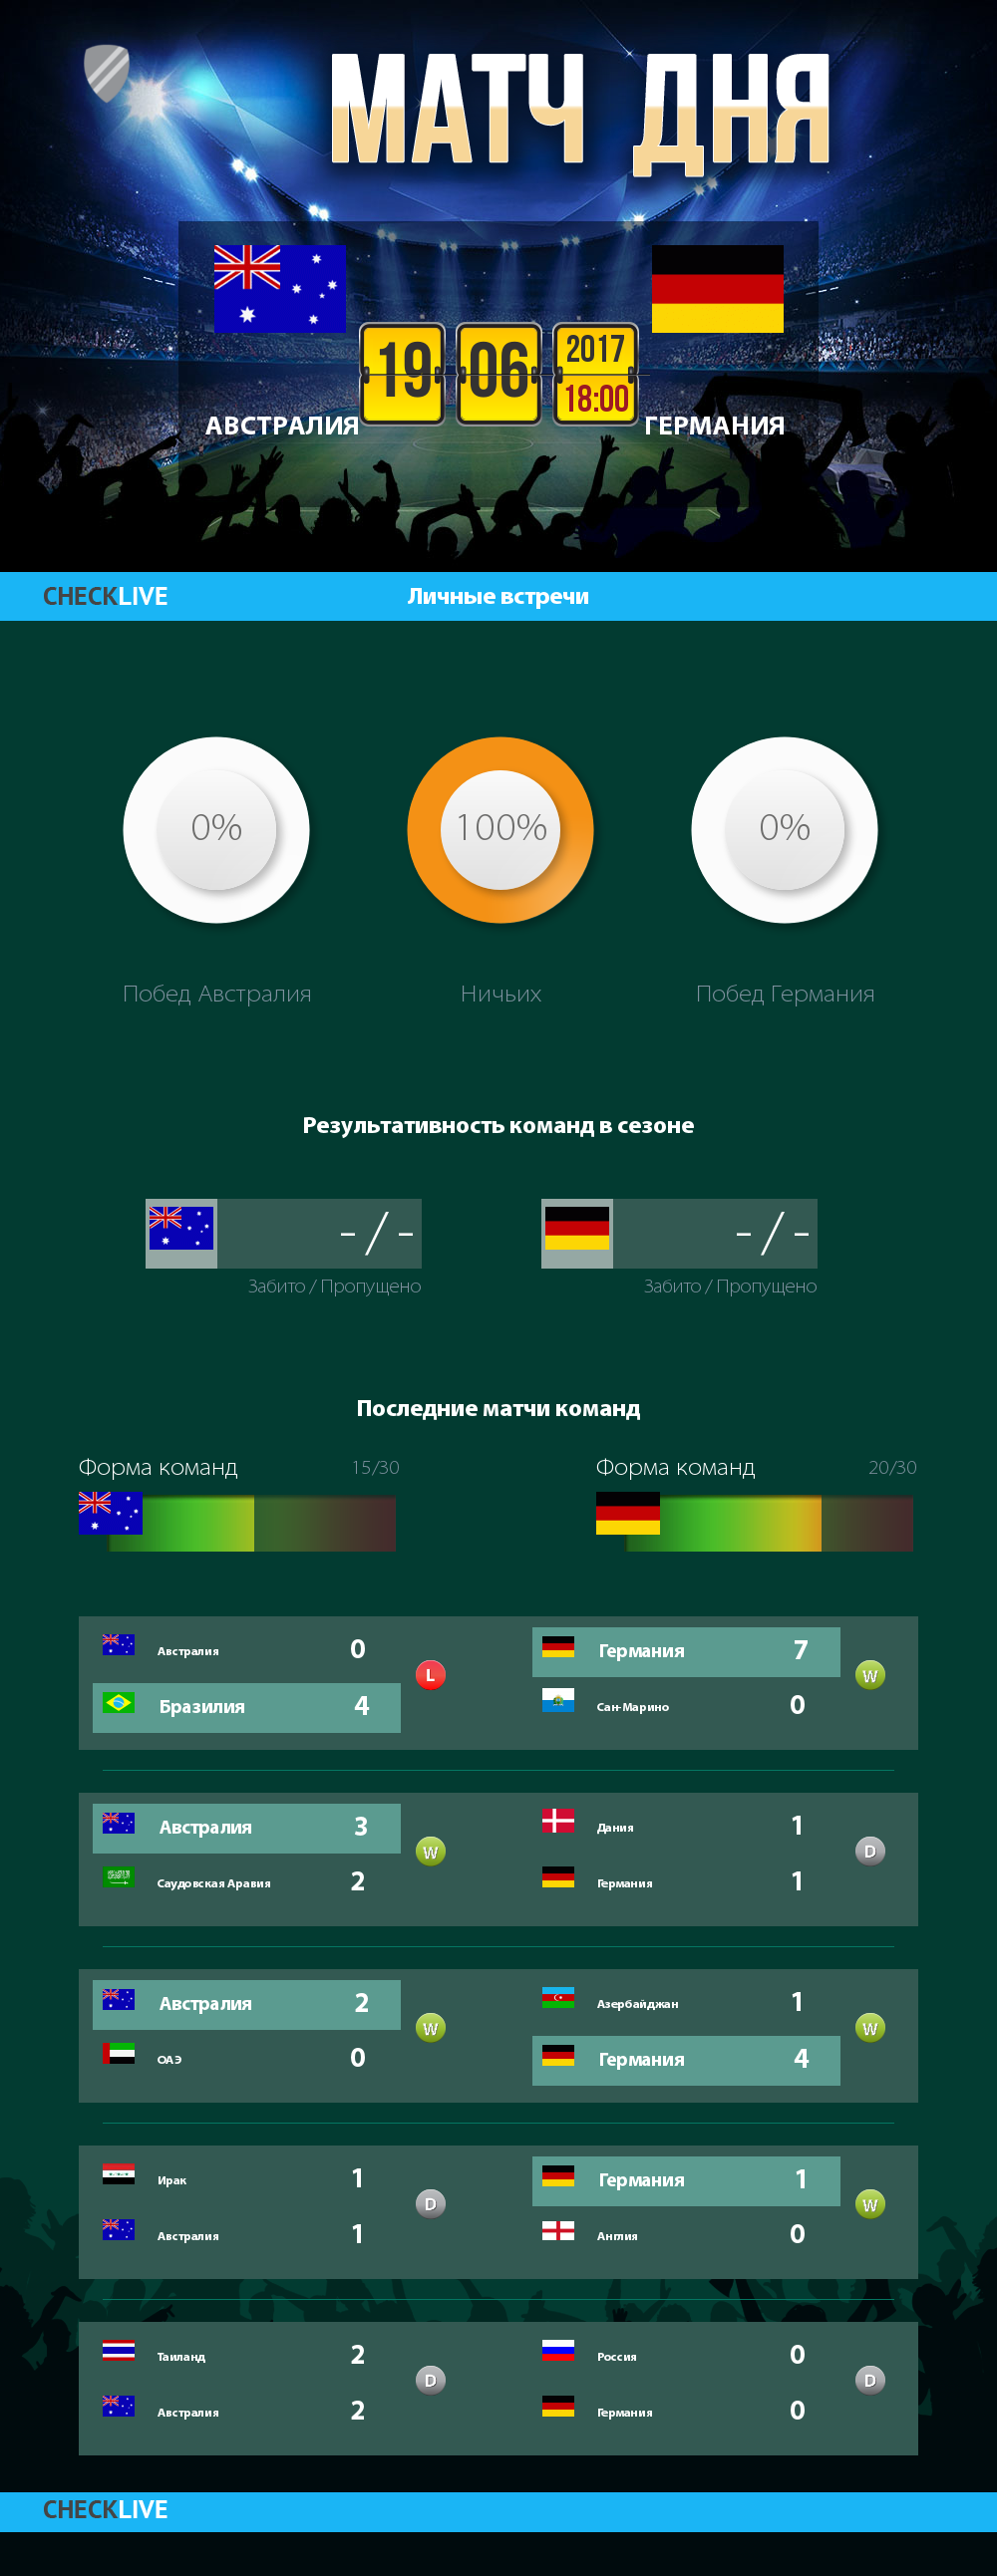 Инфографика Австралия и Германия матч дня 19.06.2017